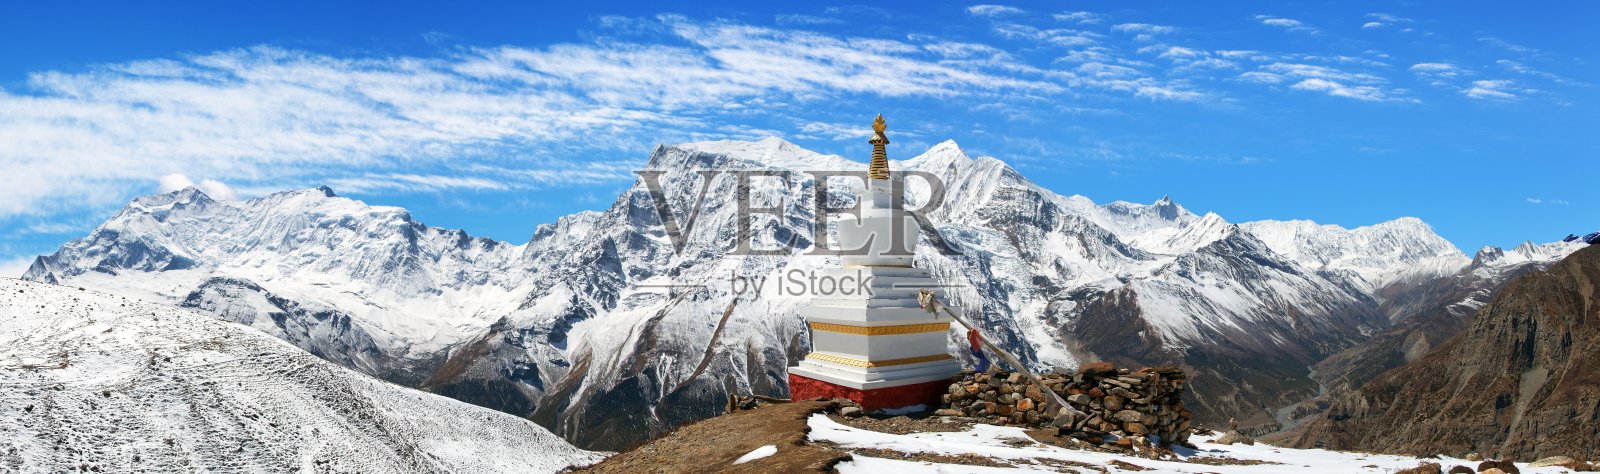 安纳普尔纳山脉的全景照片摄影图片